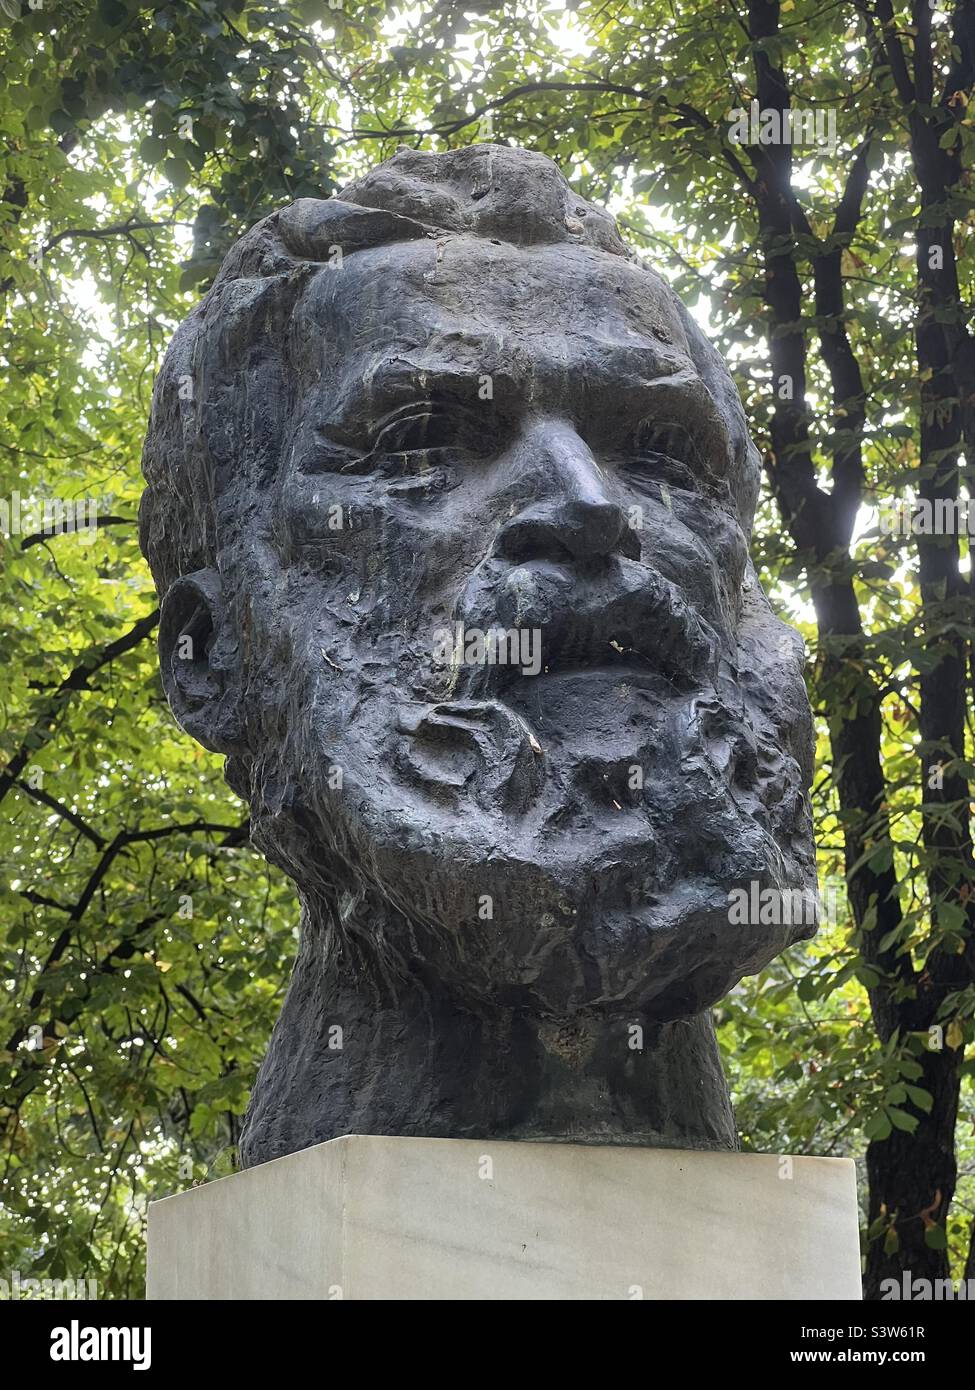 Constantin Brancusi (né dans le petit village agricole de Hobitza, en Roumanie, en 1876) est souvent considéré comme le sculpteur le plus important du 20th siècle Banque D'Images